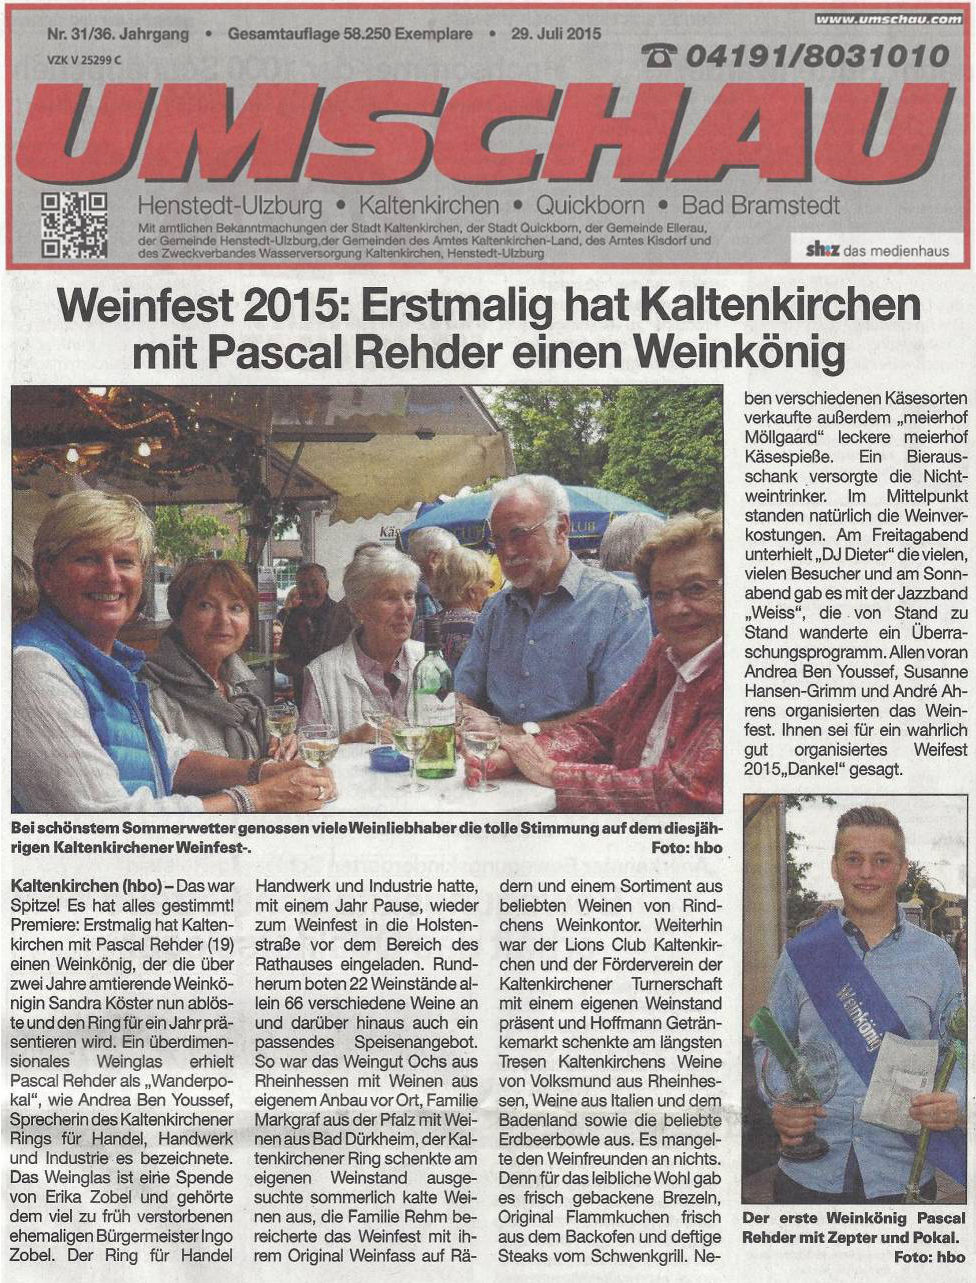 Pressebericht Umschau zum Weinfest 2015